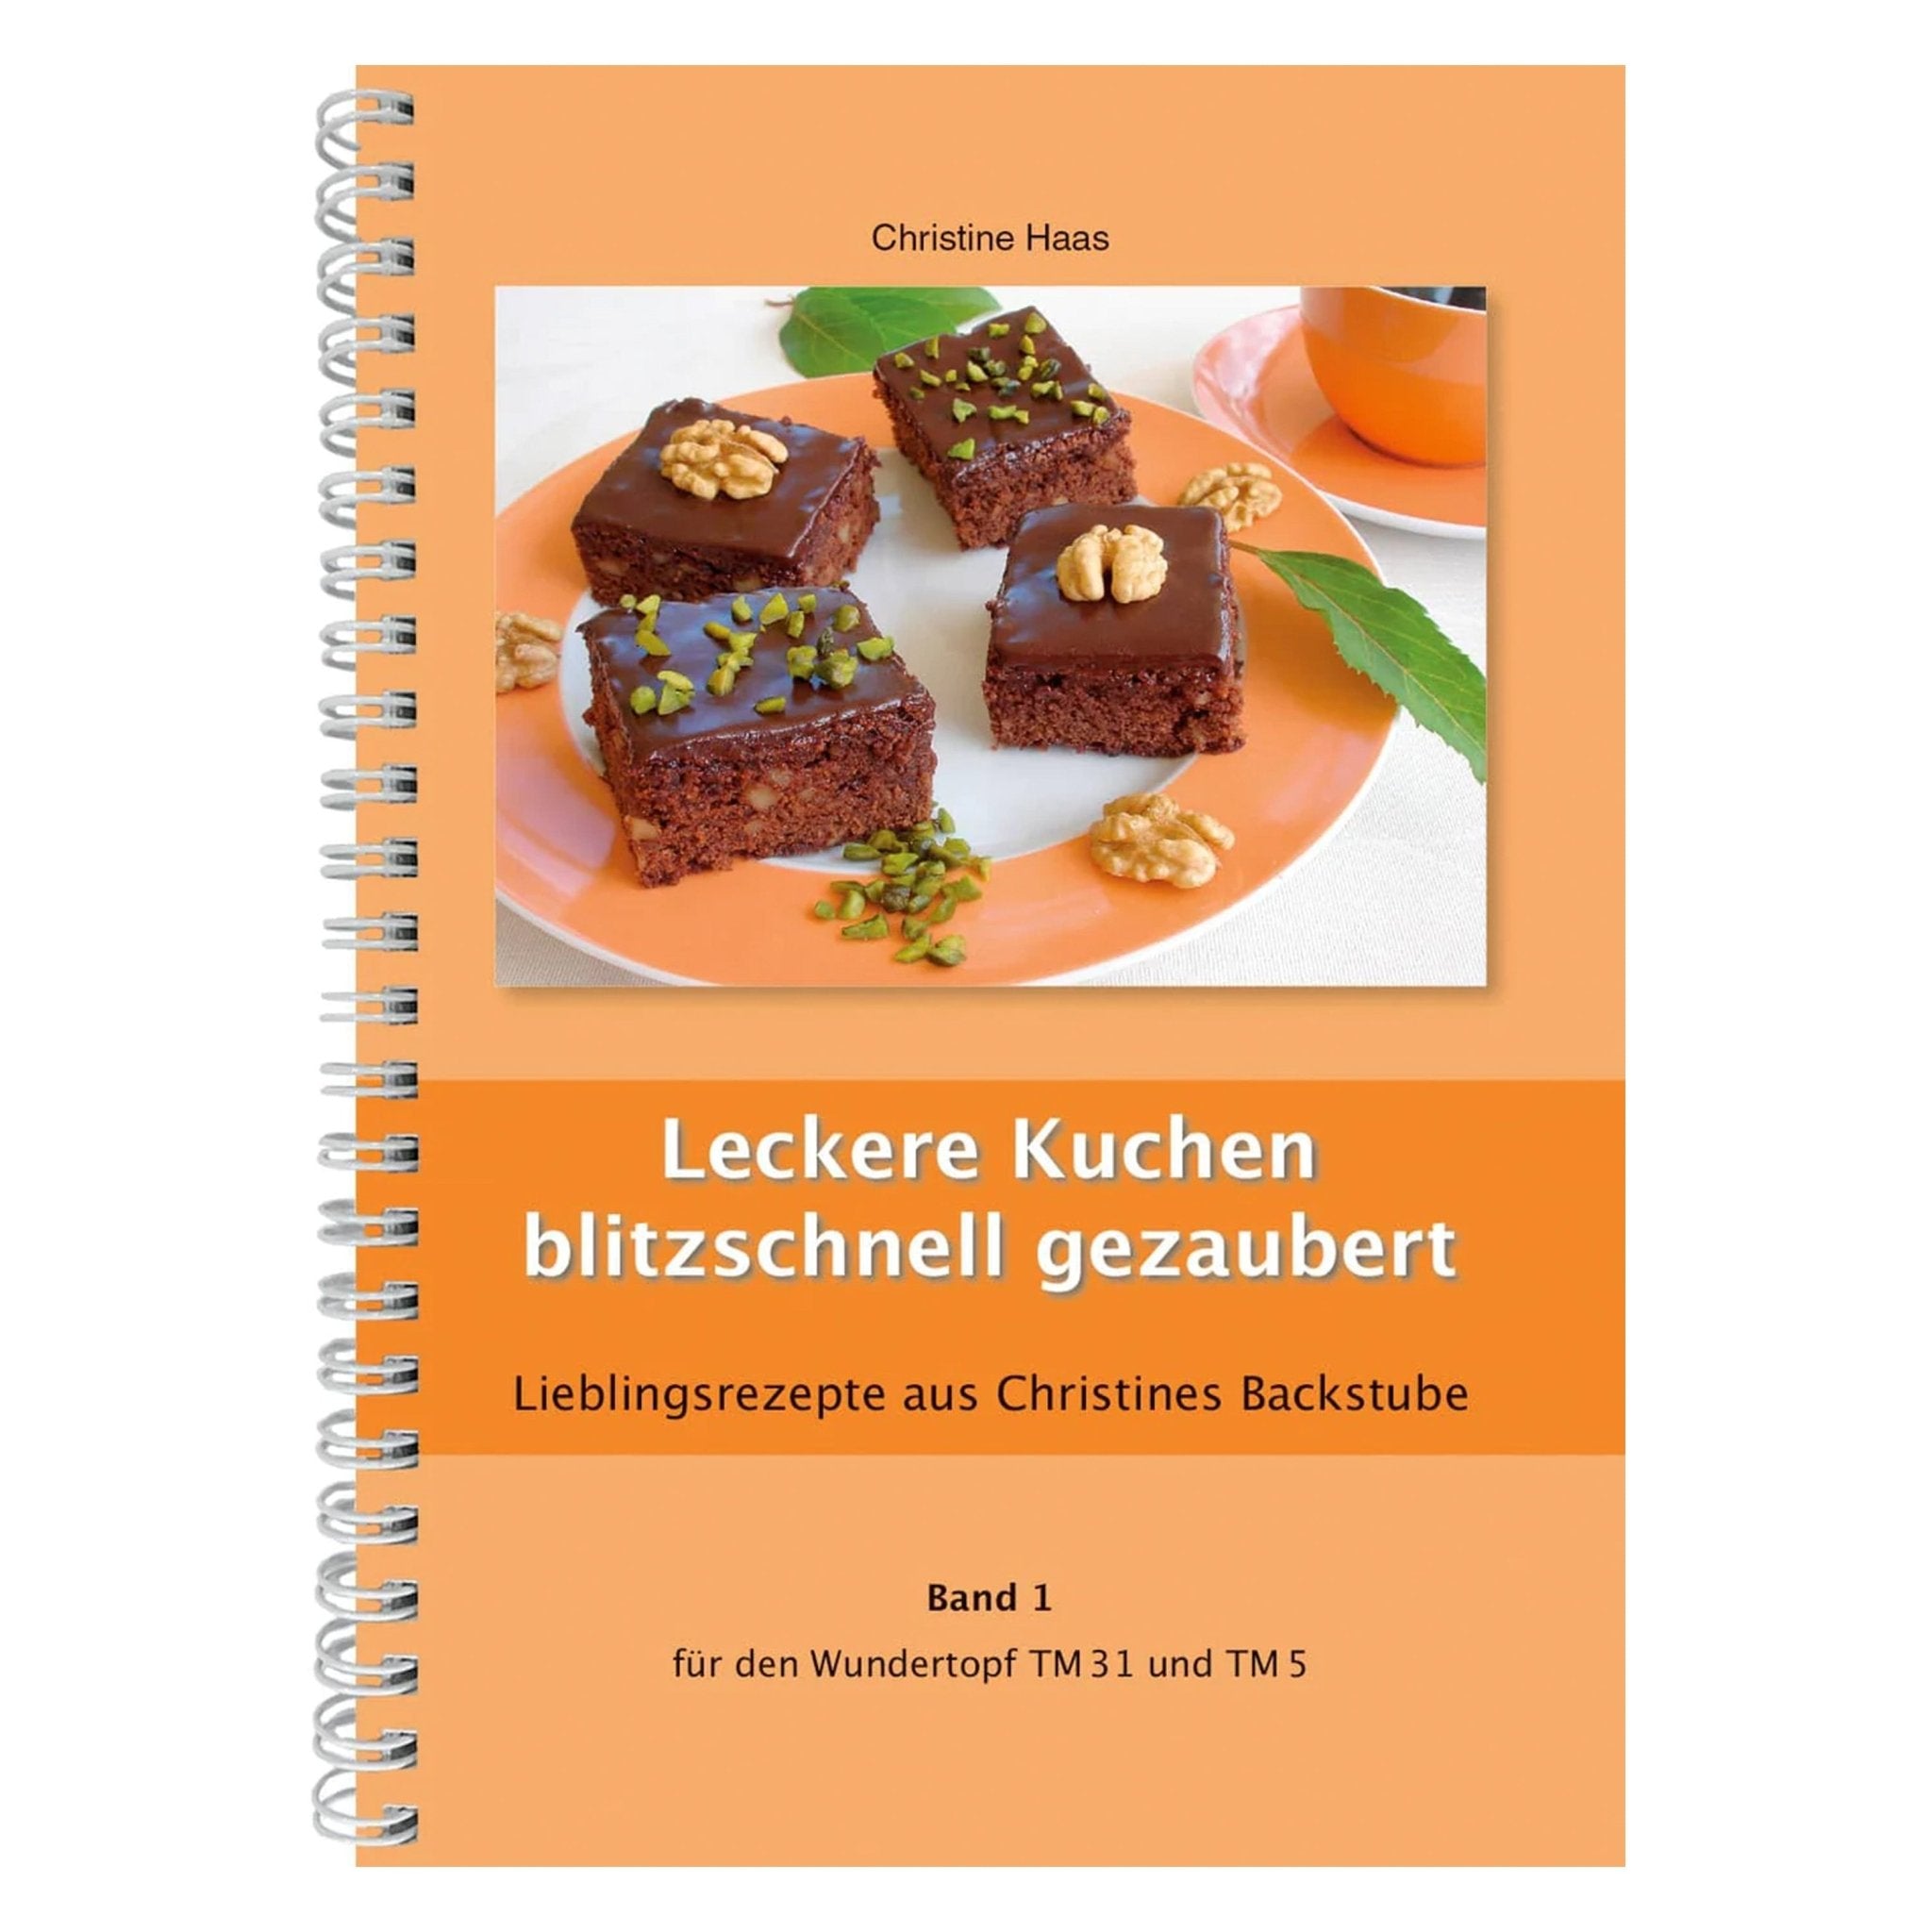 Leckere Kuchen blitzschnell gezaubert | Christine Haas | Band 1 - Wundermix GmbH